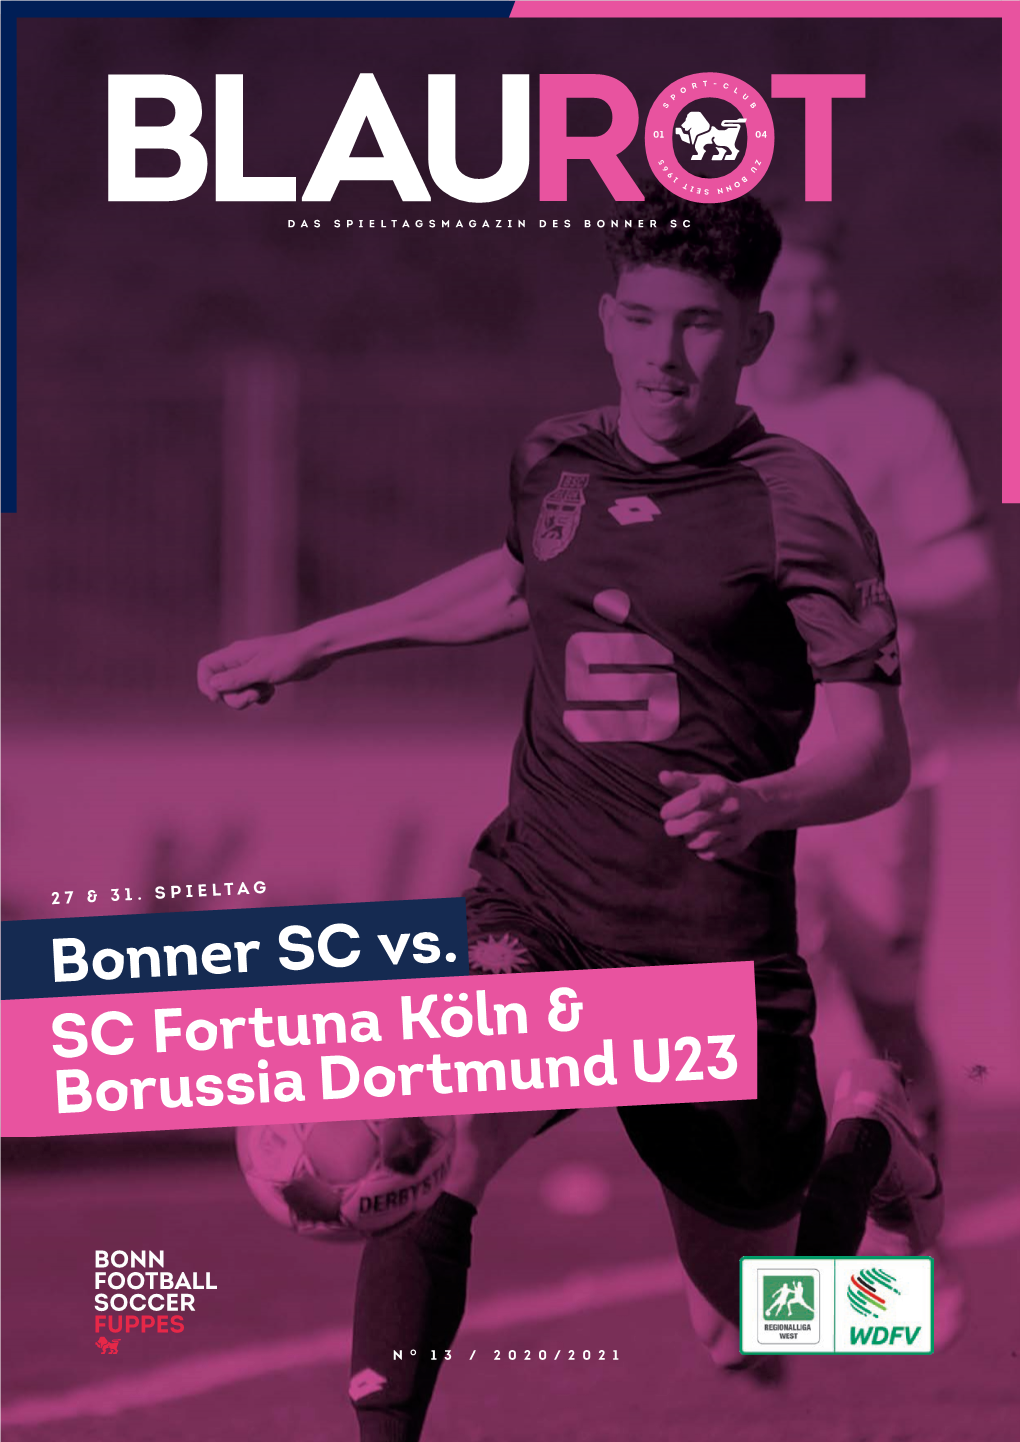 Bonner SC Vs. SC Fortuna Köln & Borussia Dortmund